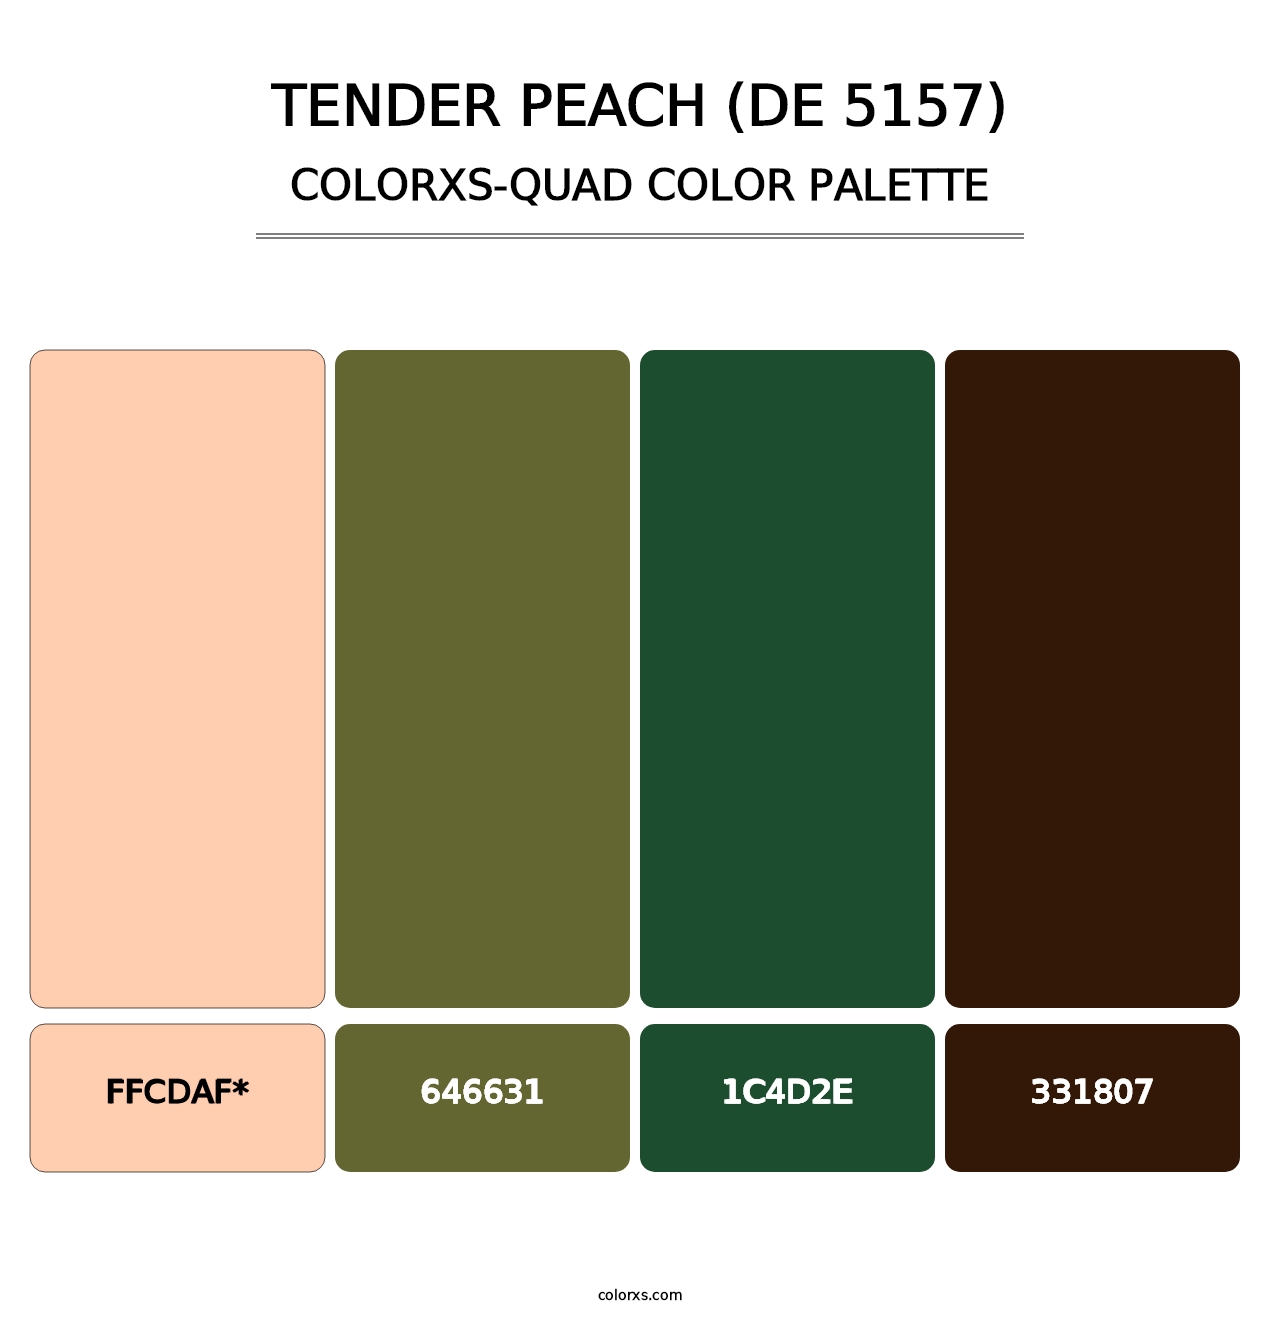 Tender Peach (DE 5157) - Colorxs Quad Palette